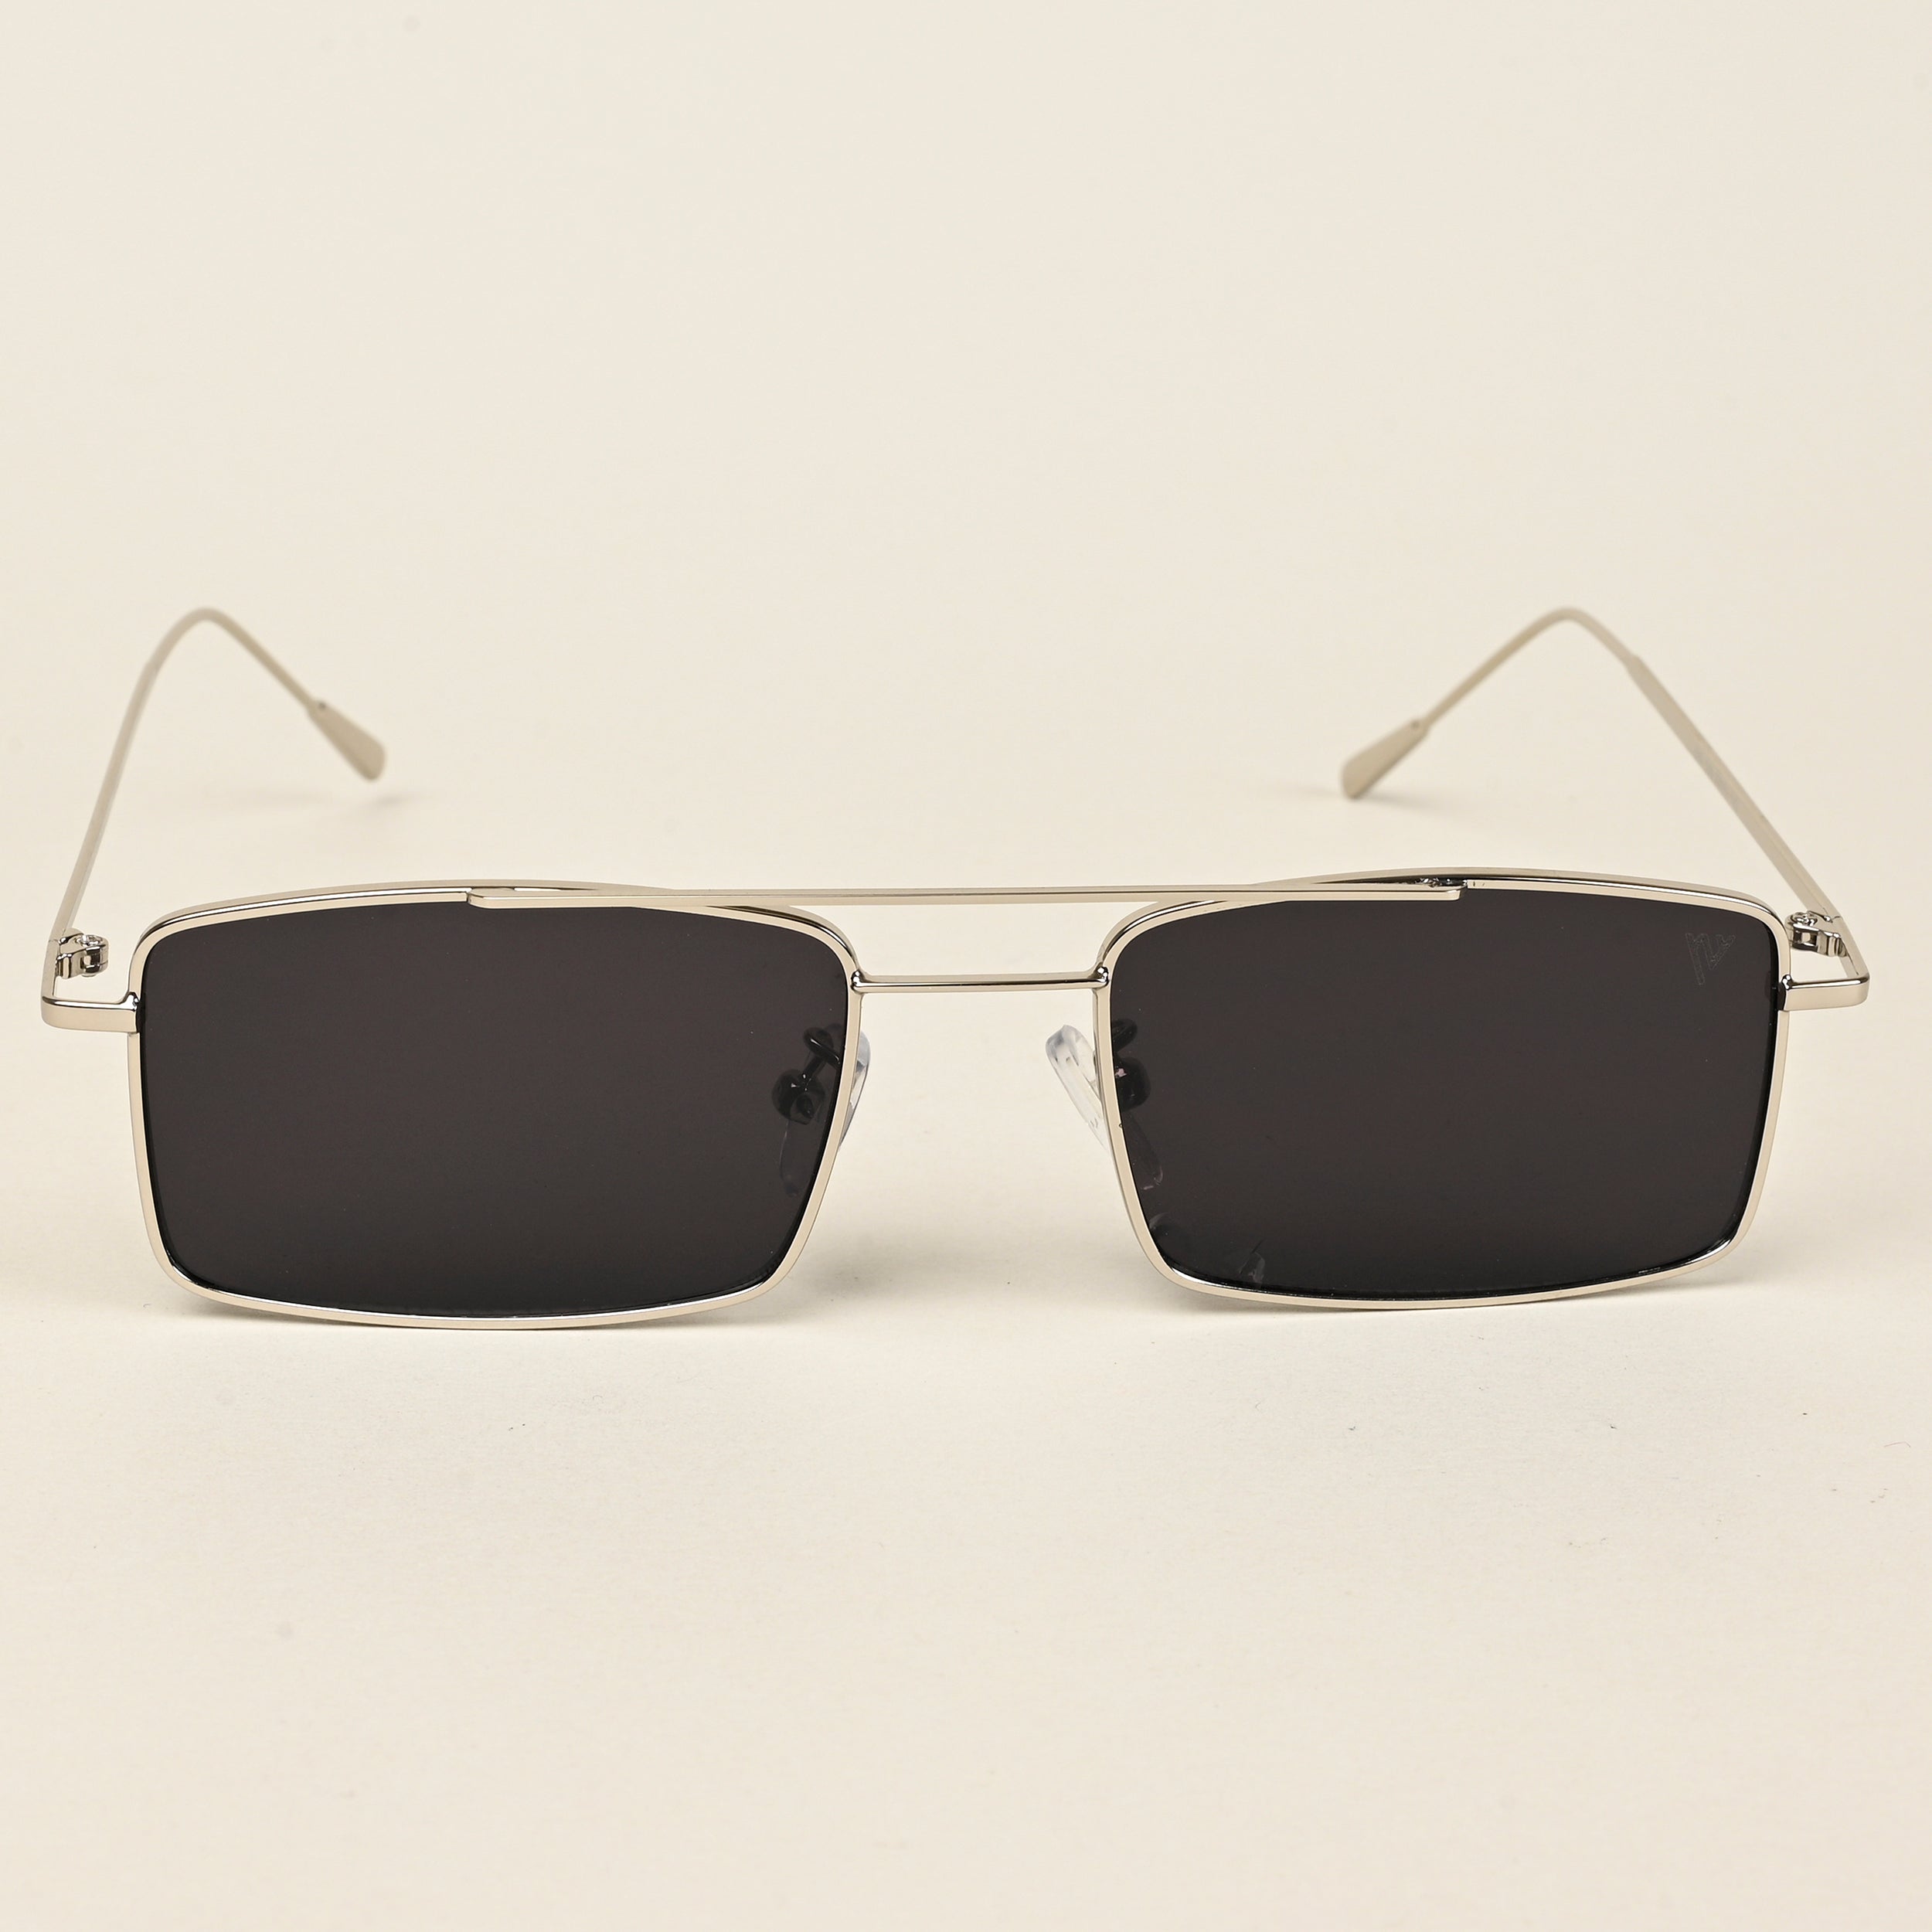 Voyage Rectangle Sunglasses for Men & Women (Black Lens | Silver Frame  - MG5192)